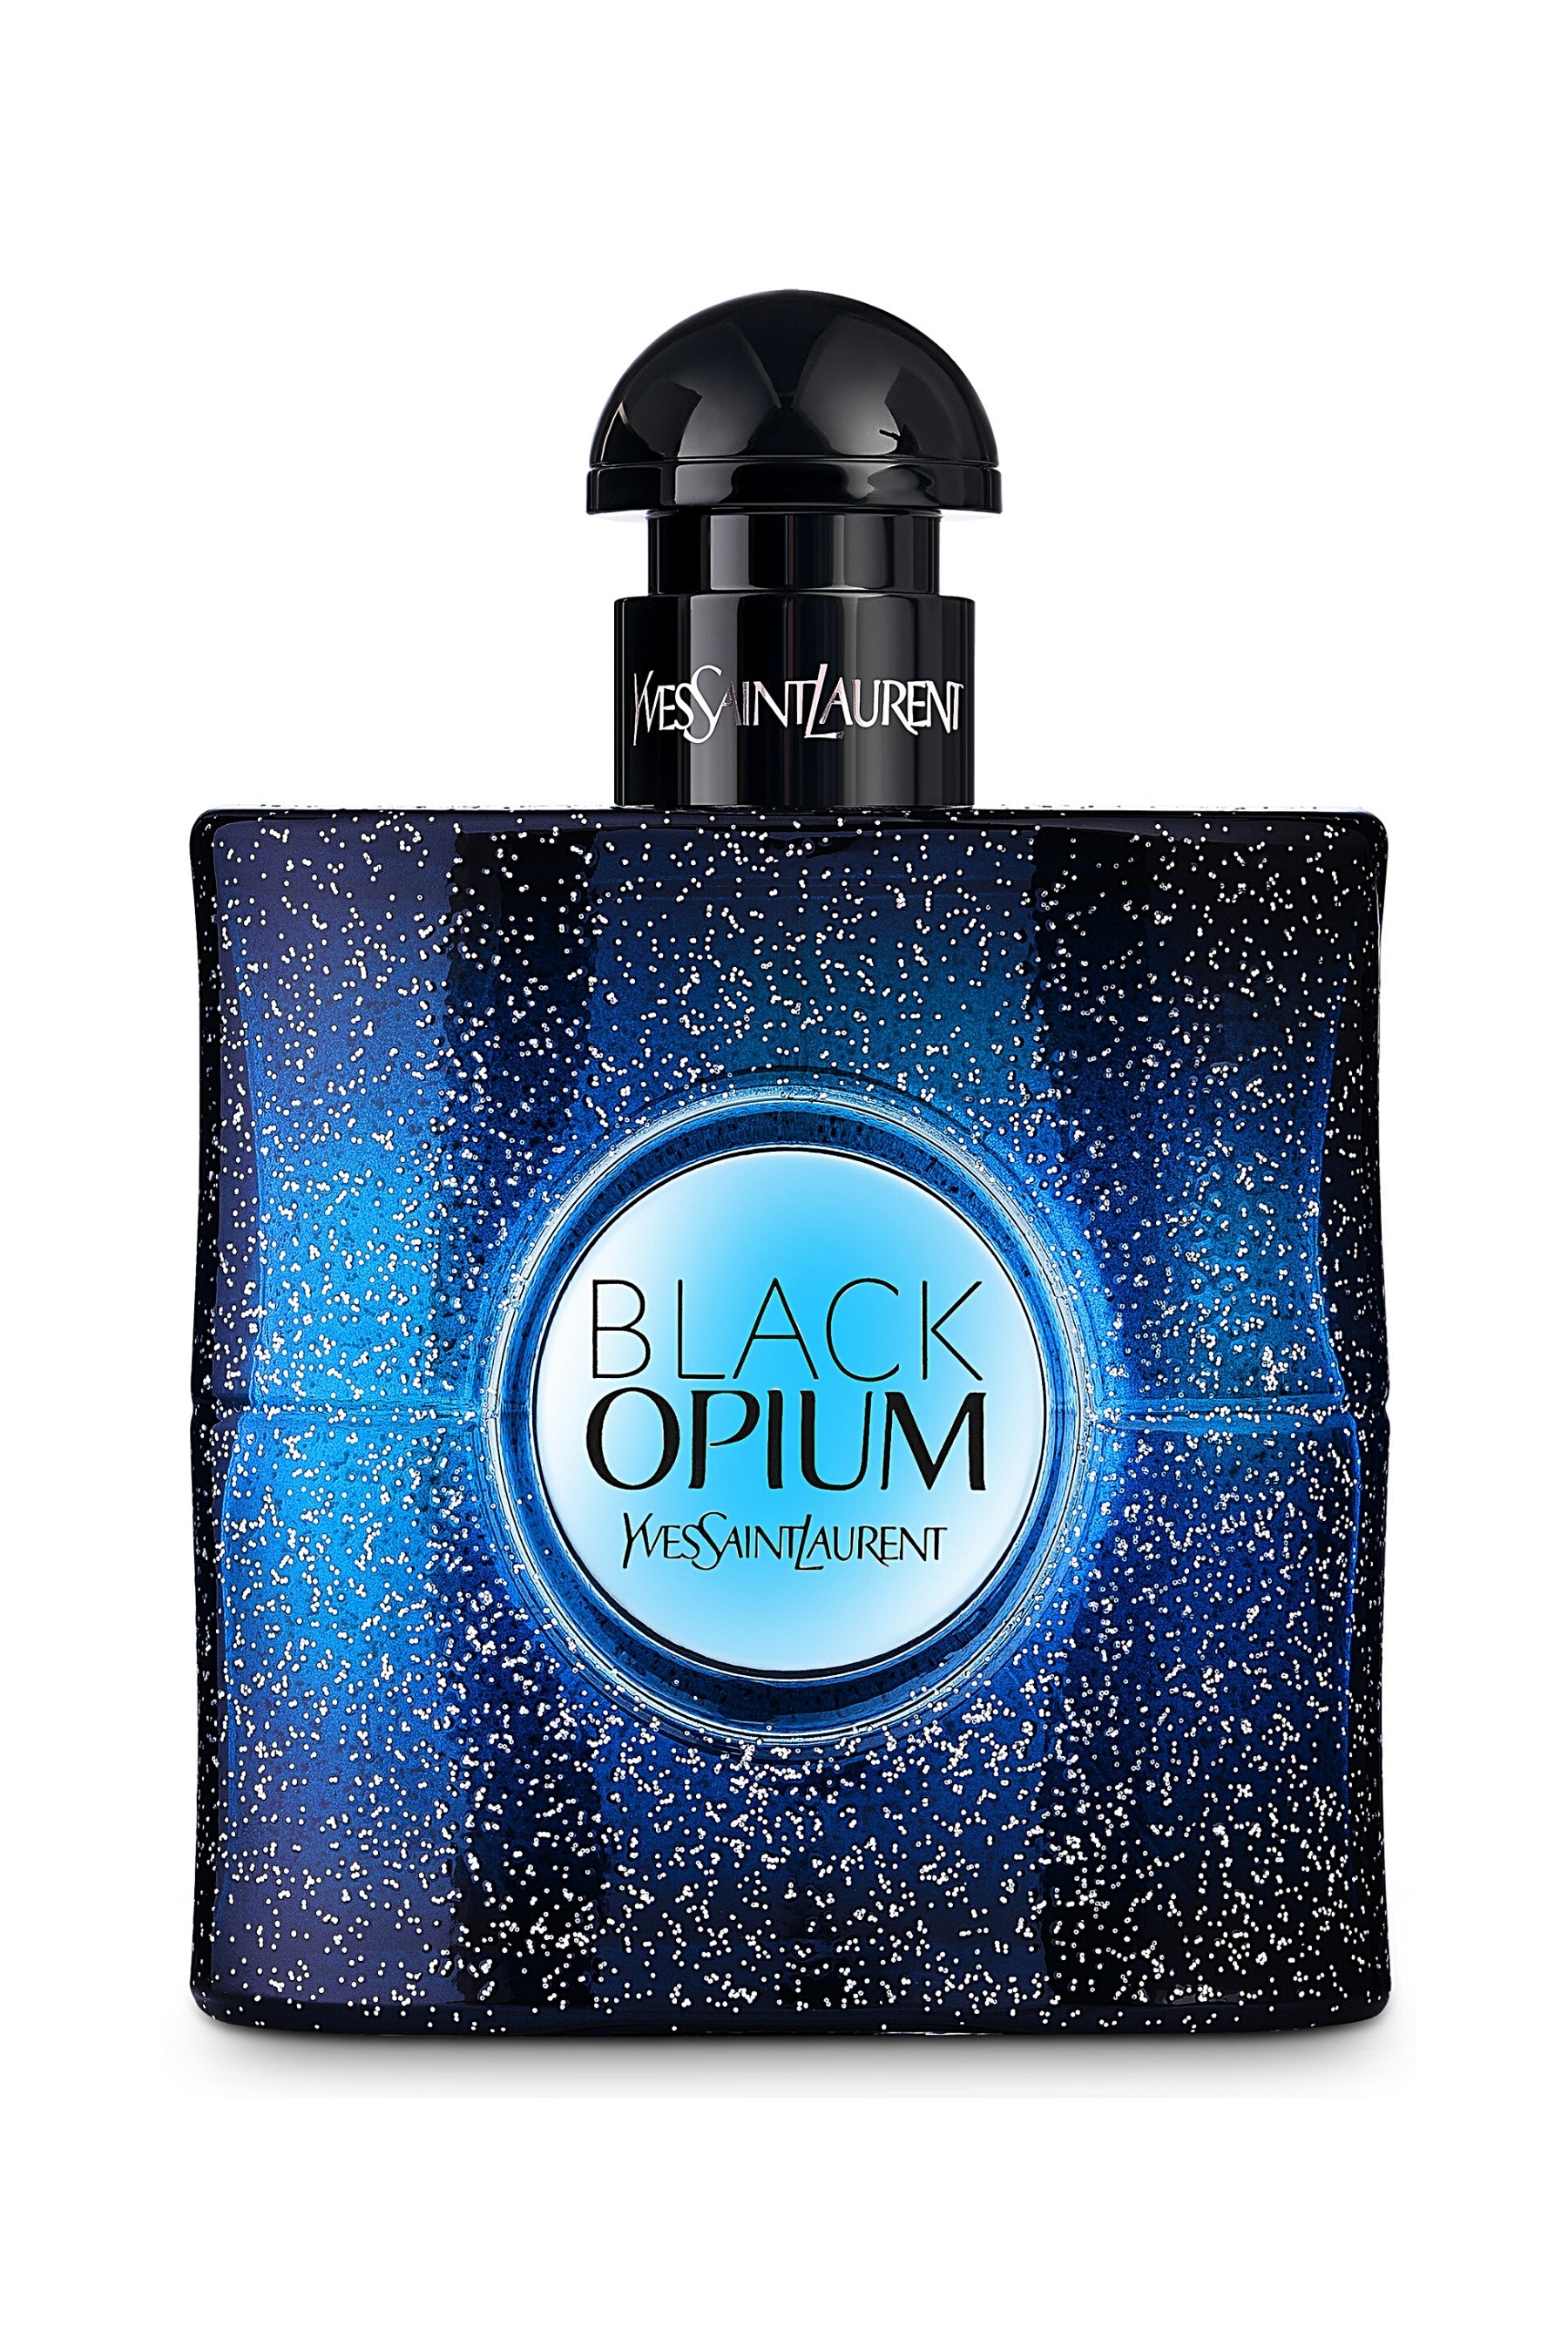 Yves Saint Laurent Black Opium eau de parfum for women